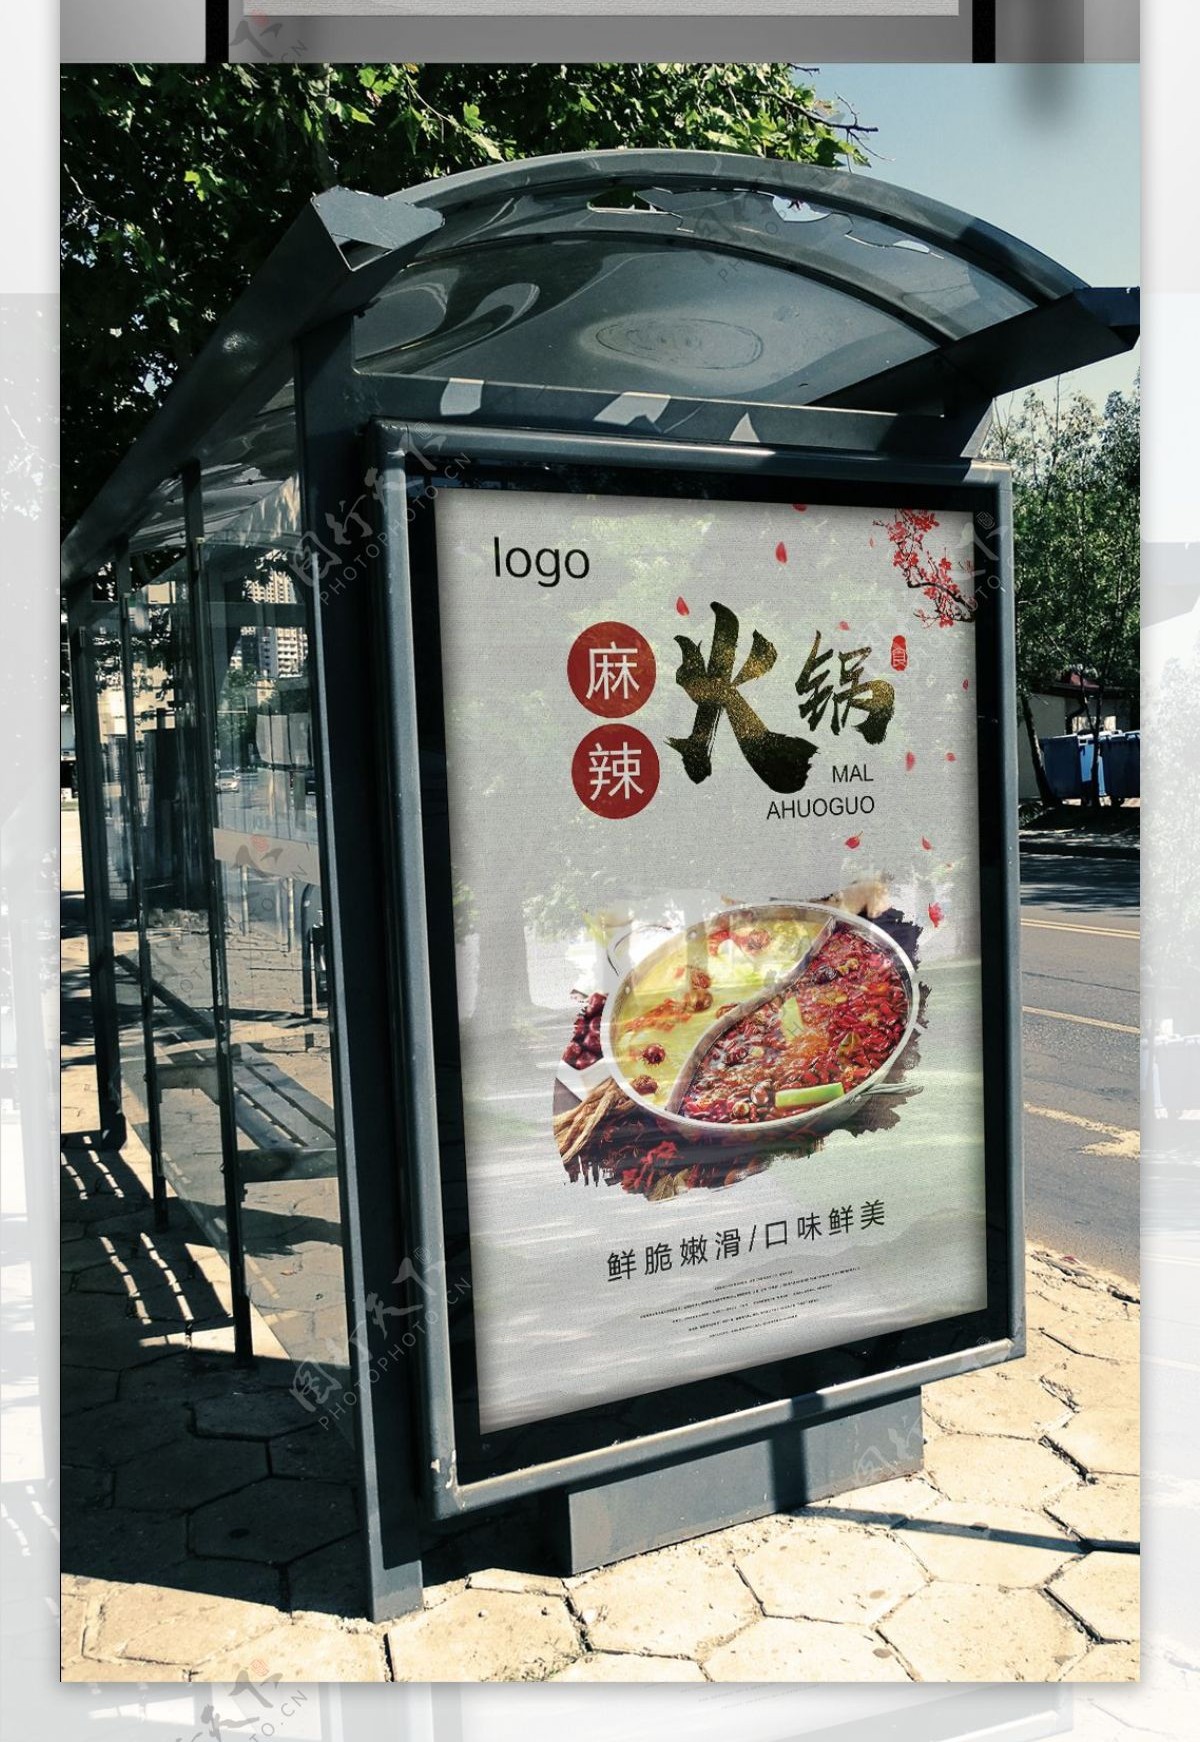 中国风美食火锅文化海报